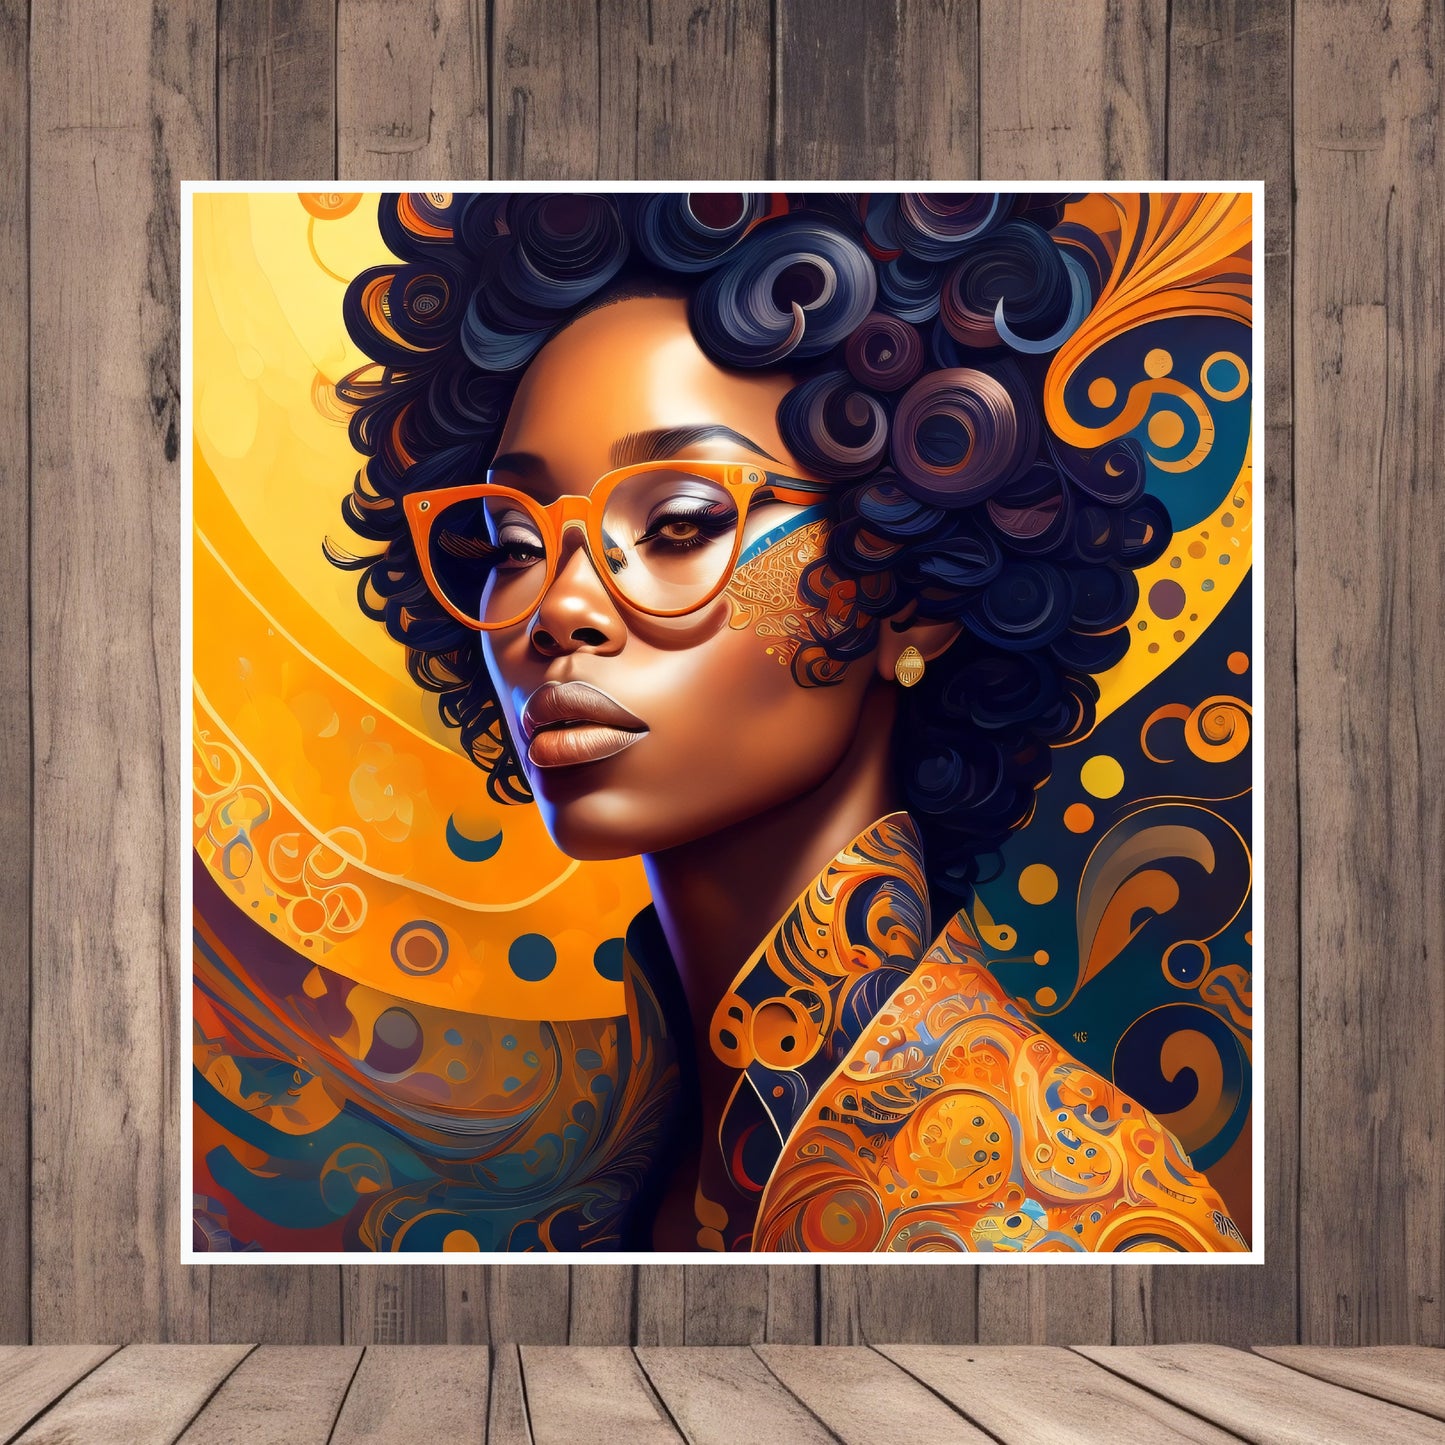 Ange d’Afrique Black Girl Portrait Art Design sur papier mat haut de gamme Utilisation personnelle ou professionnelle Décoration spéciale Grande résolution 15